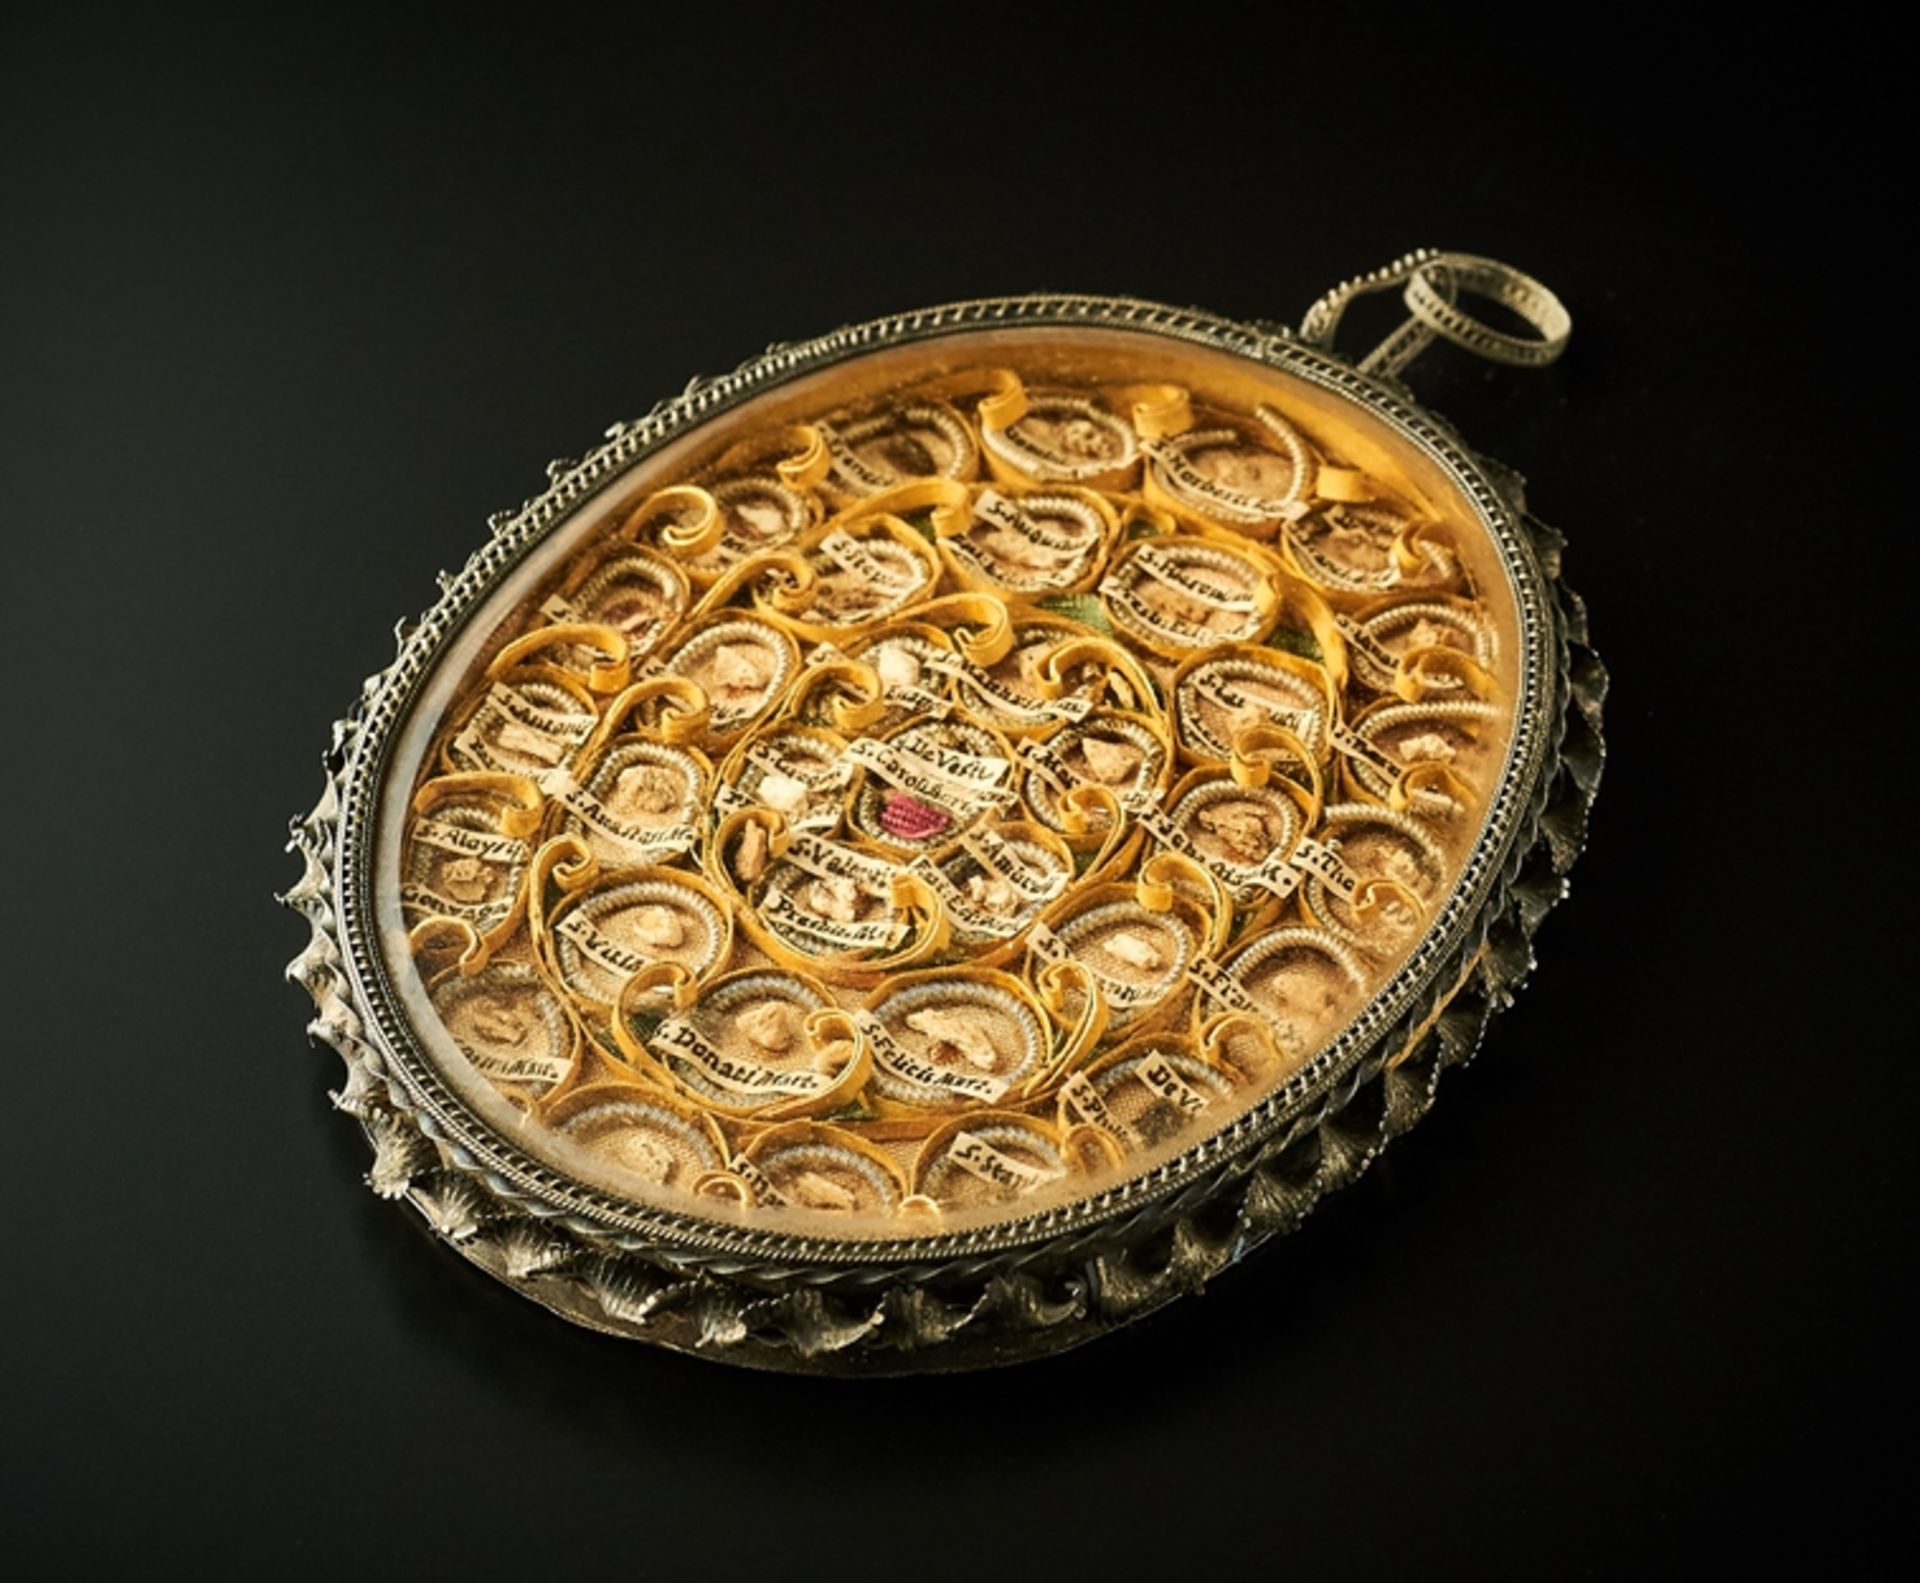 Großes Reliquien-Amulett. 36 diverse Reliquien. Silberfassung. Verso kirchliches Siegel von Brixen